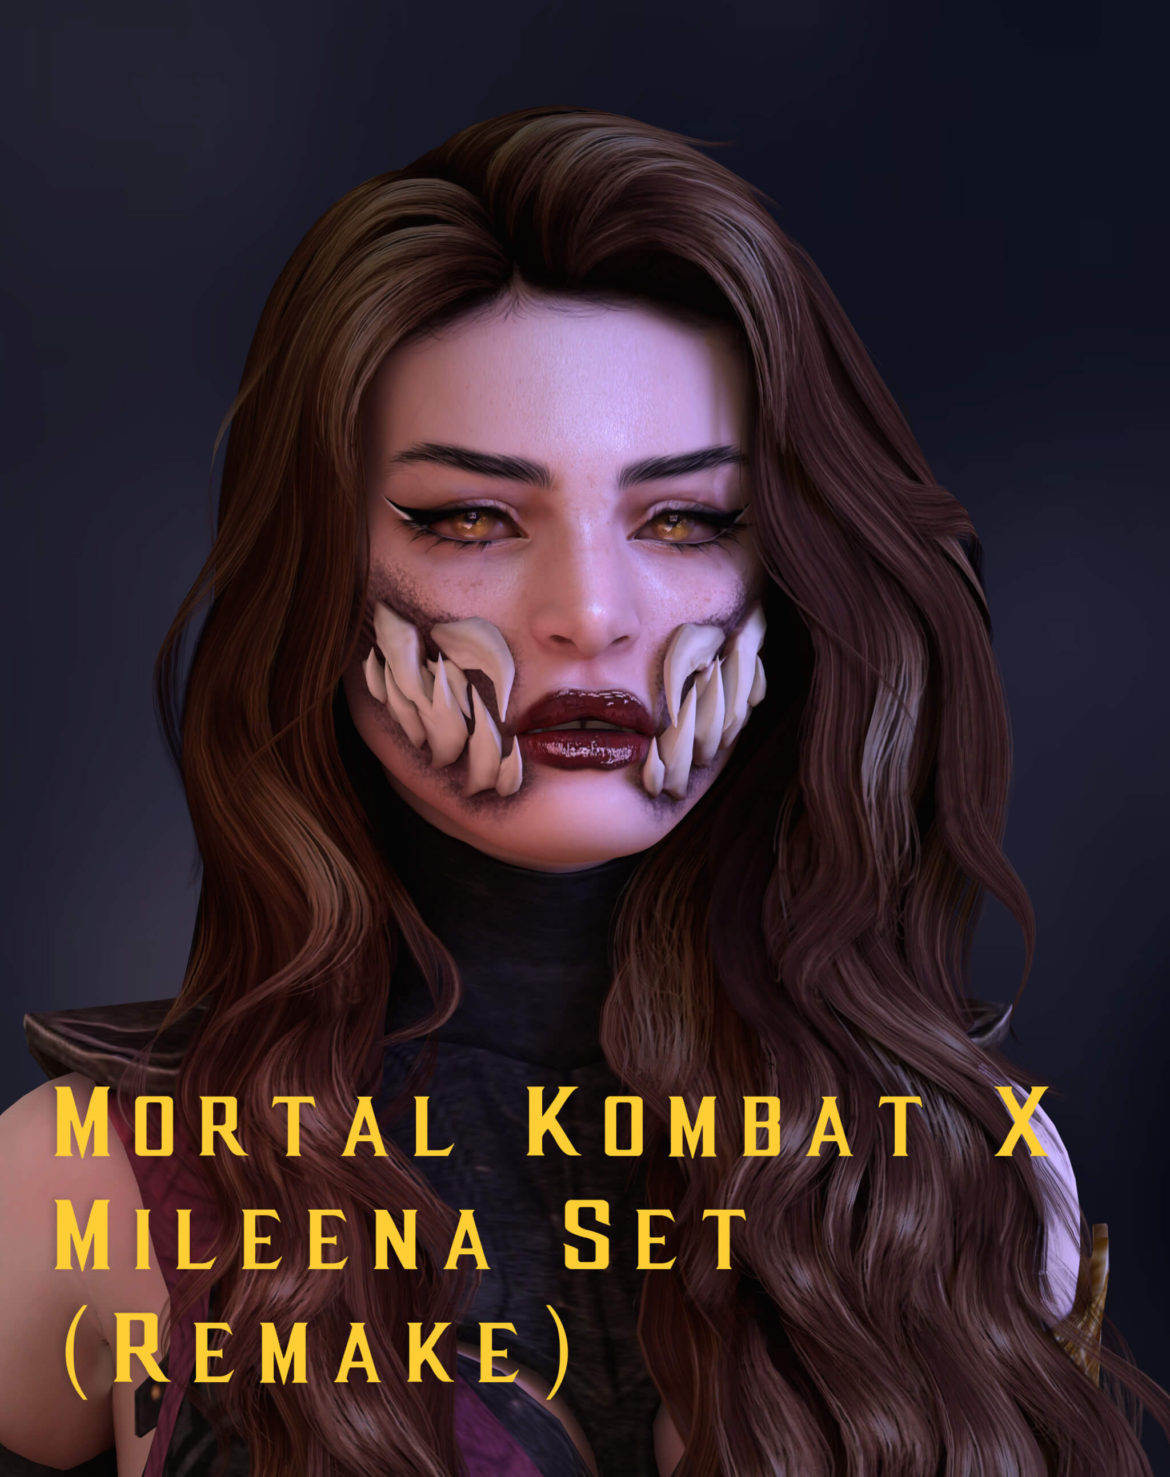 Sims 4 Mortal Kombat X Mileena Set Remake Outfits 1 Micat Game 0225